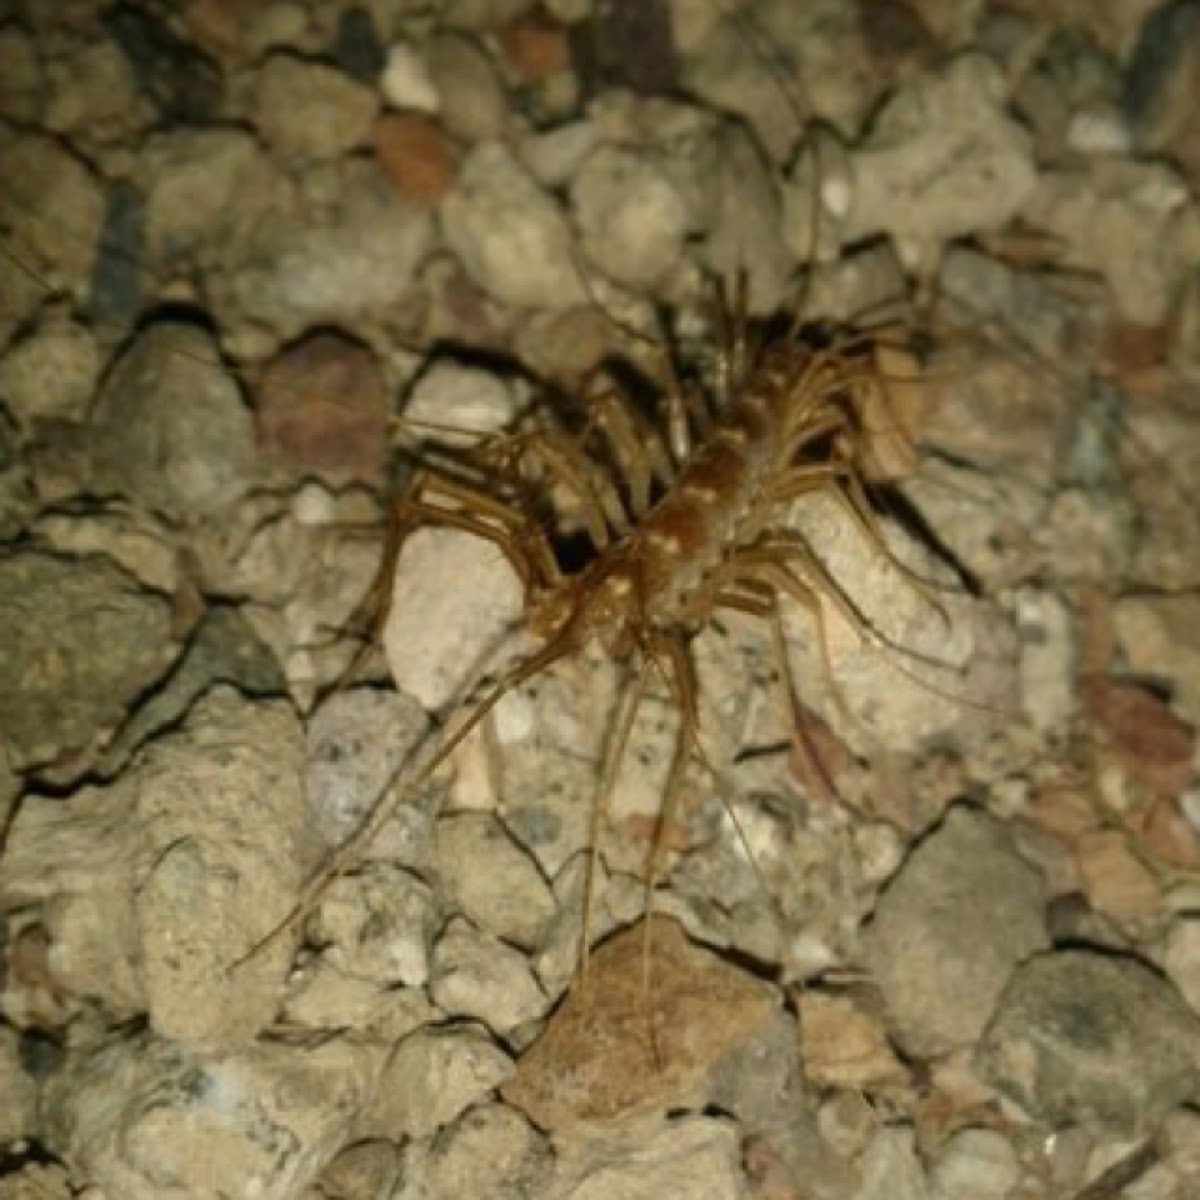 House Centipede.